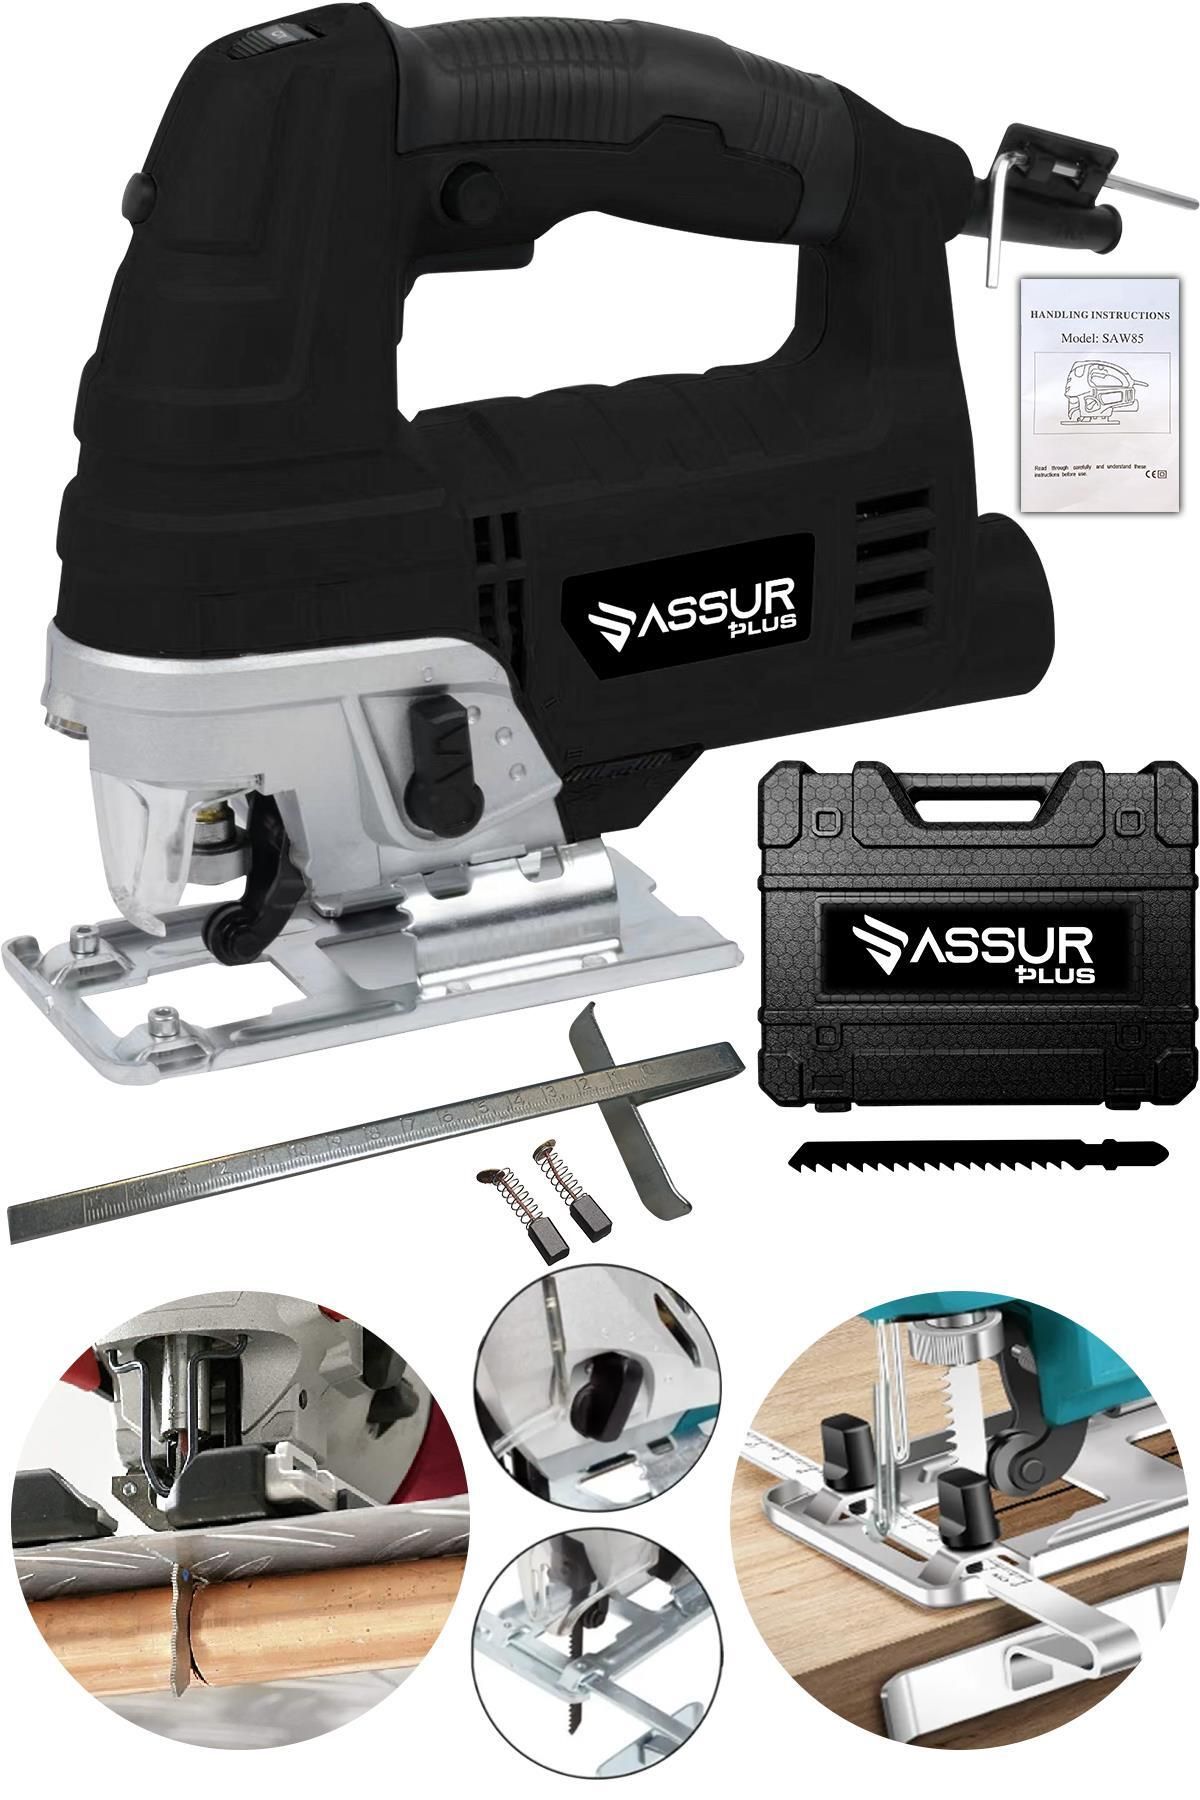 ASSUR PLUS Bakır Sargılı Professional Devir Ayarlı Dekupaj Bıçkı Testere Makinası 800 W Siyah